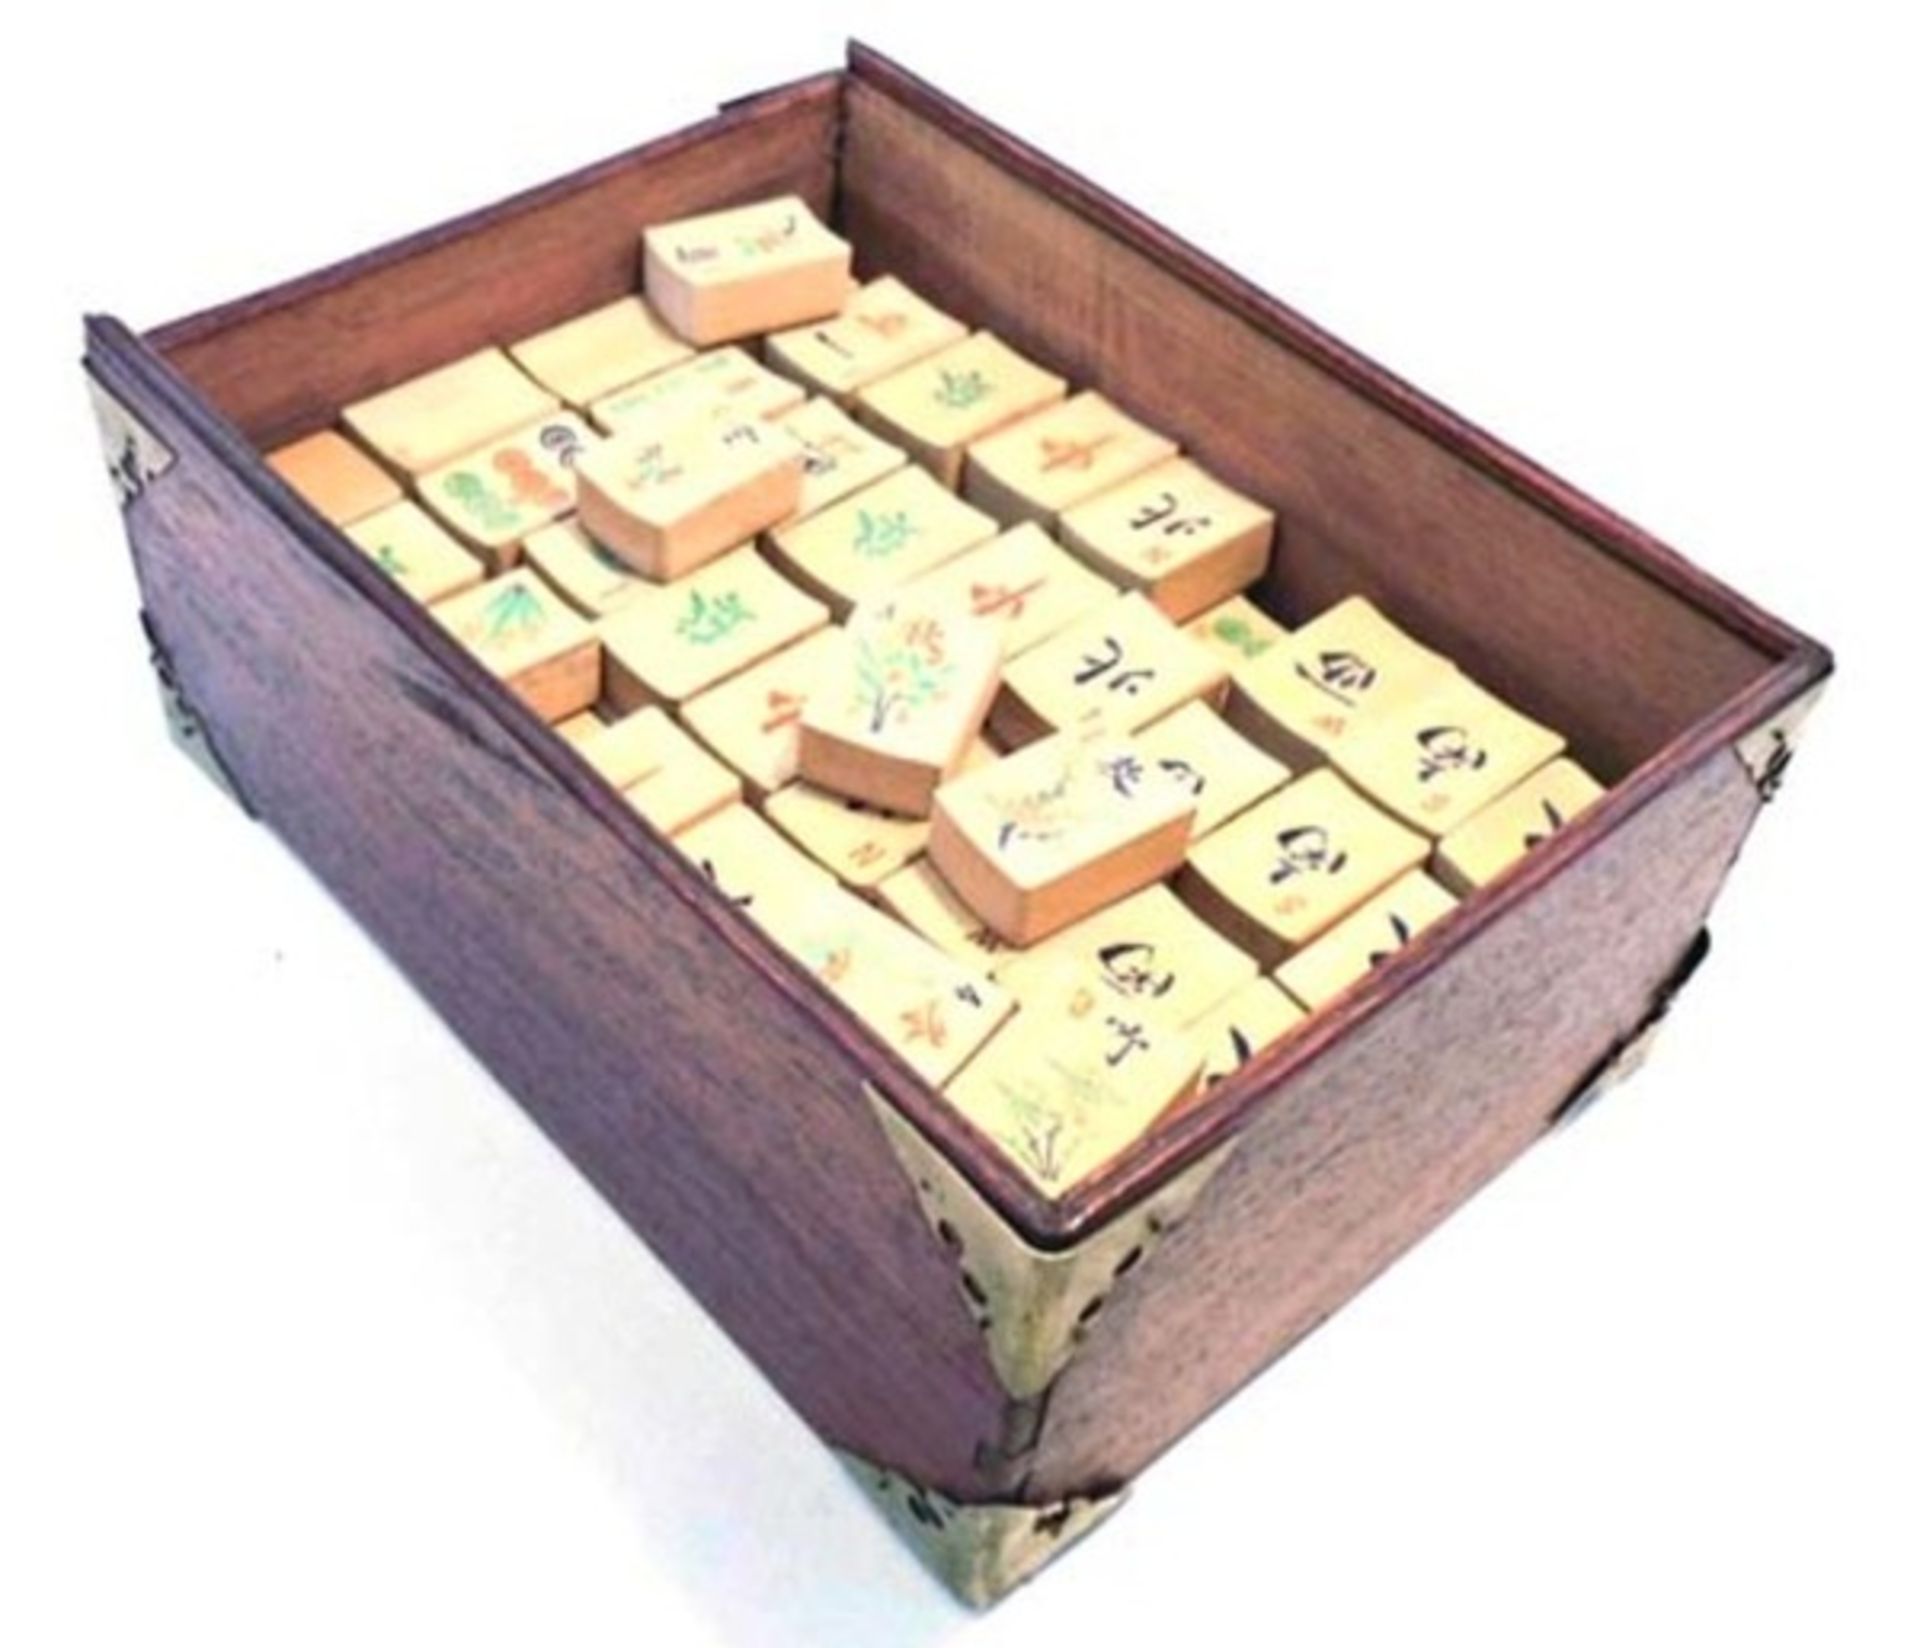 (Mahjong) Mahjong bamboe, schuifdoos met Babcock-karakters, ca. 1924 - Bild 2 aus 8